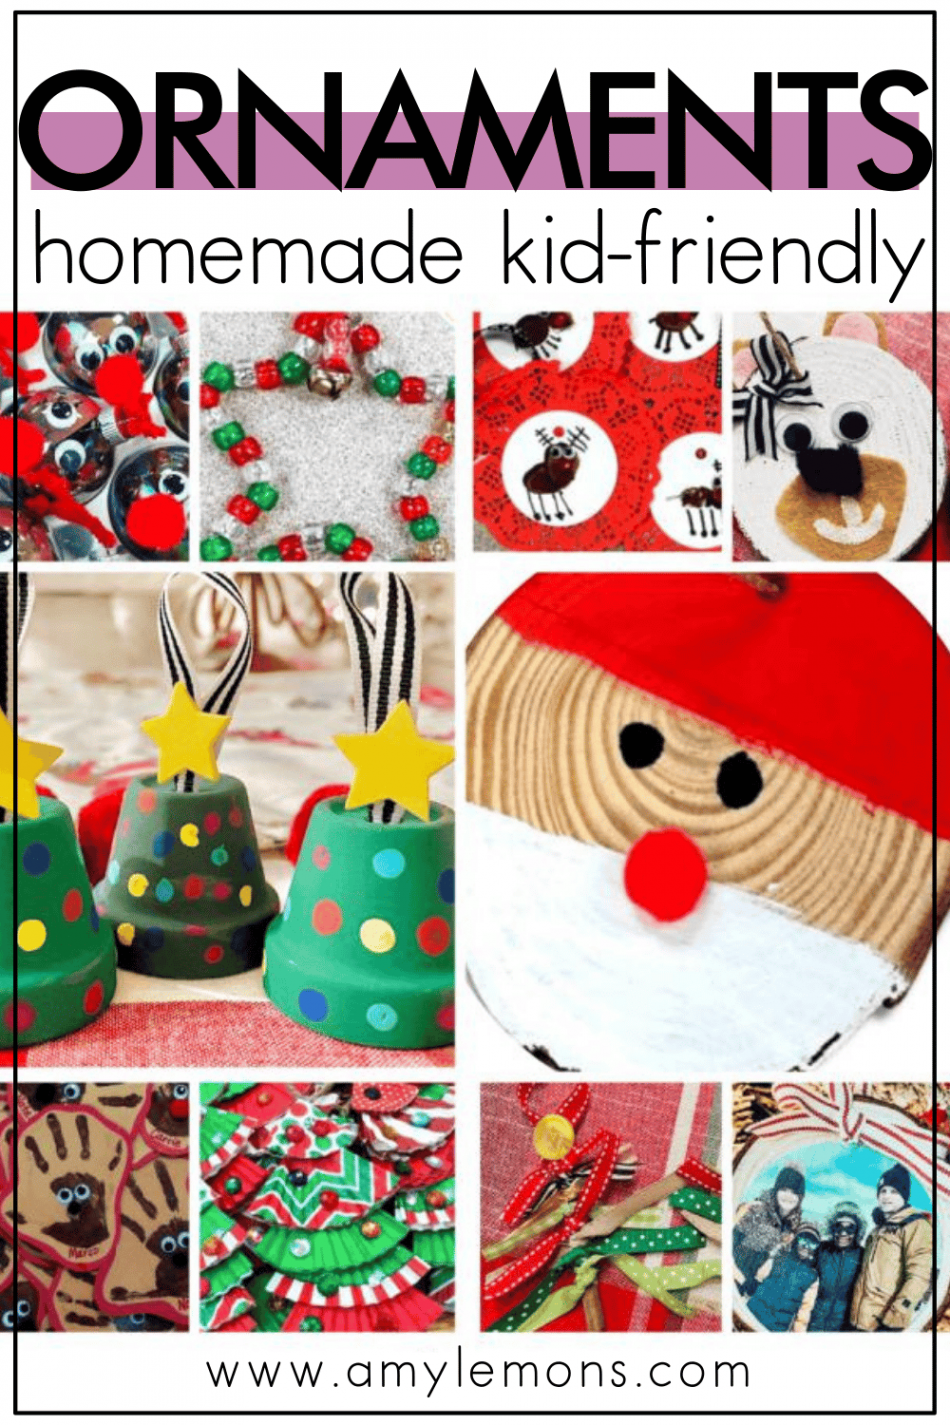 Easy Christmas Ornaments to Make with Kids - Amy Lemons